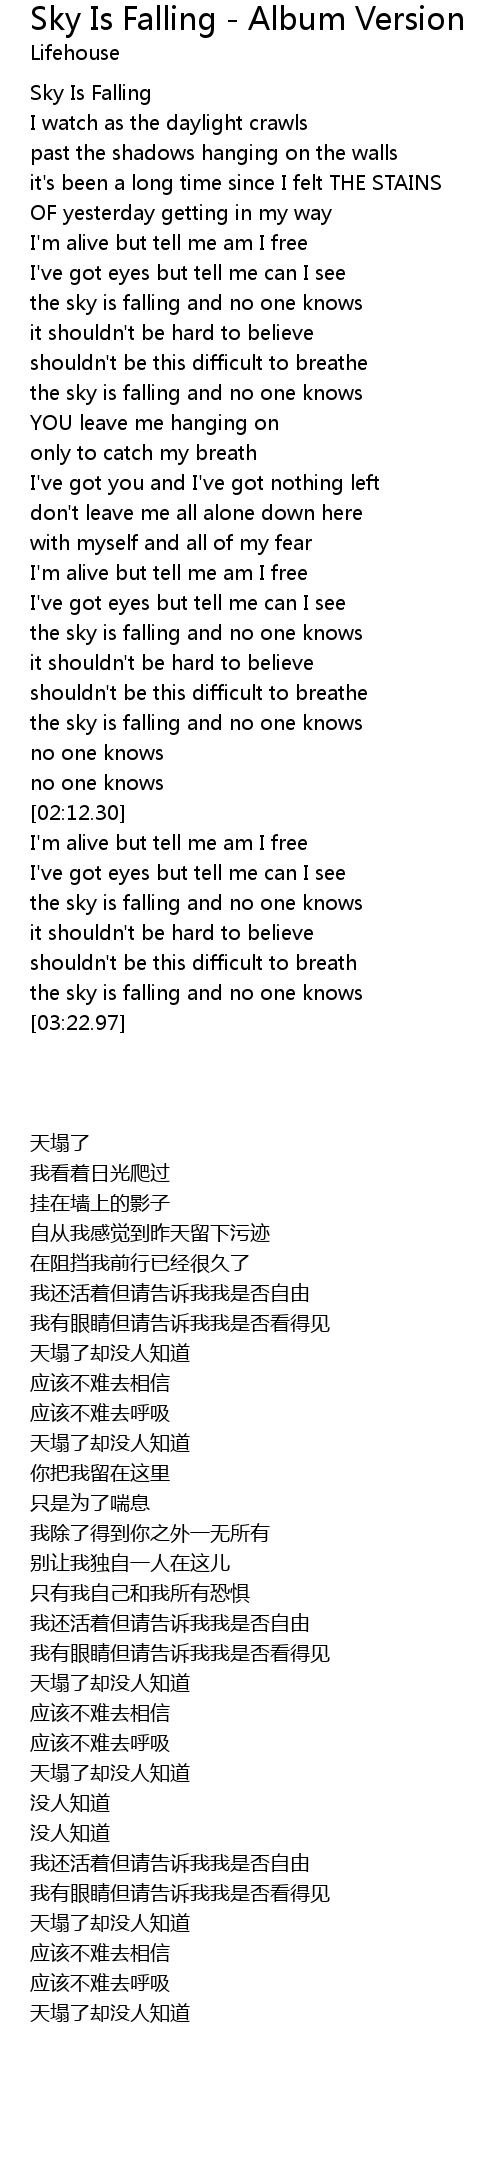 Sky Is Falling Album Version Lyrics Follow Lyrics